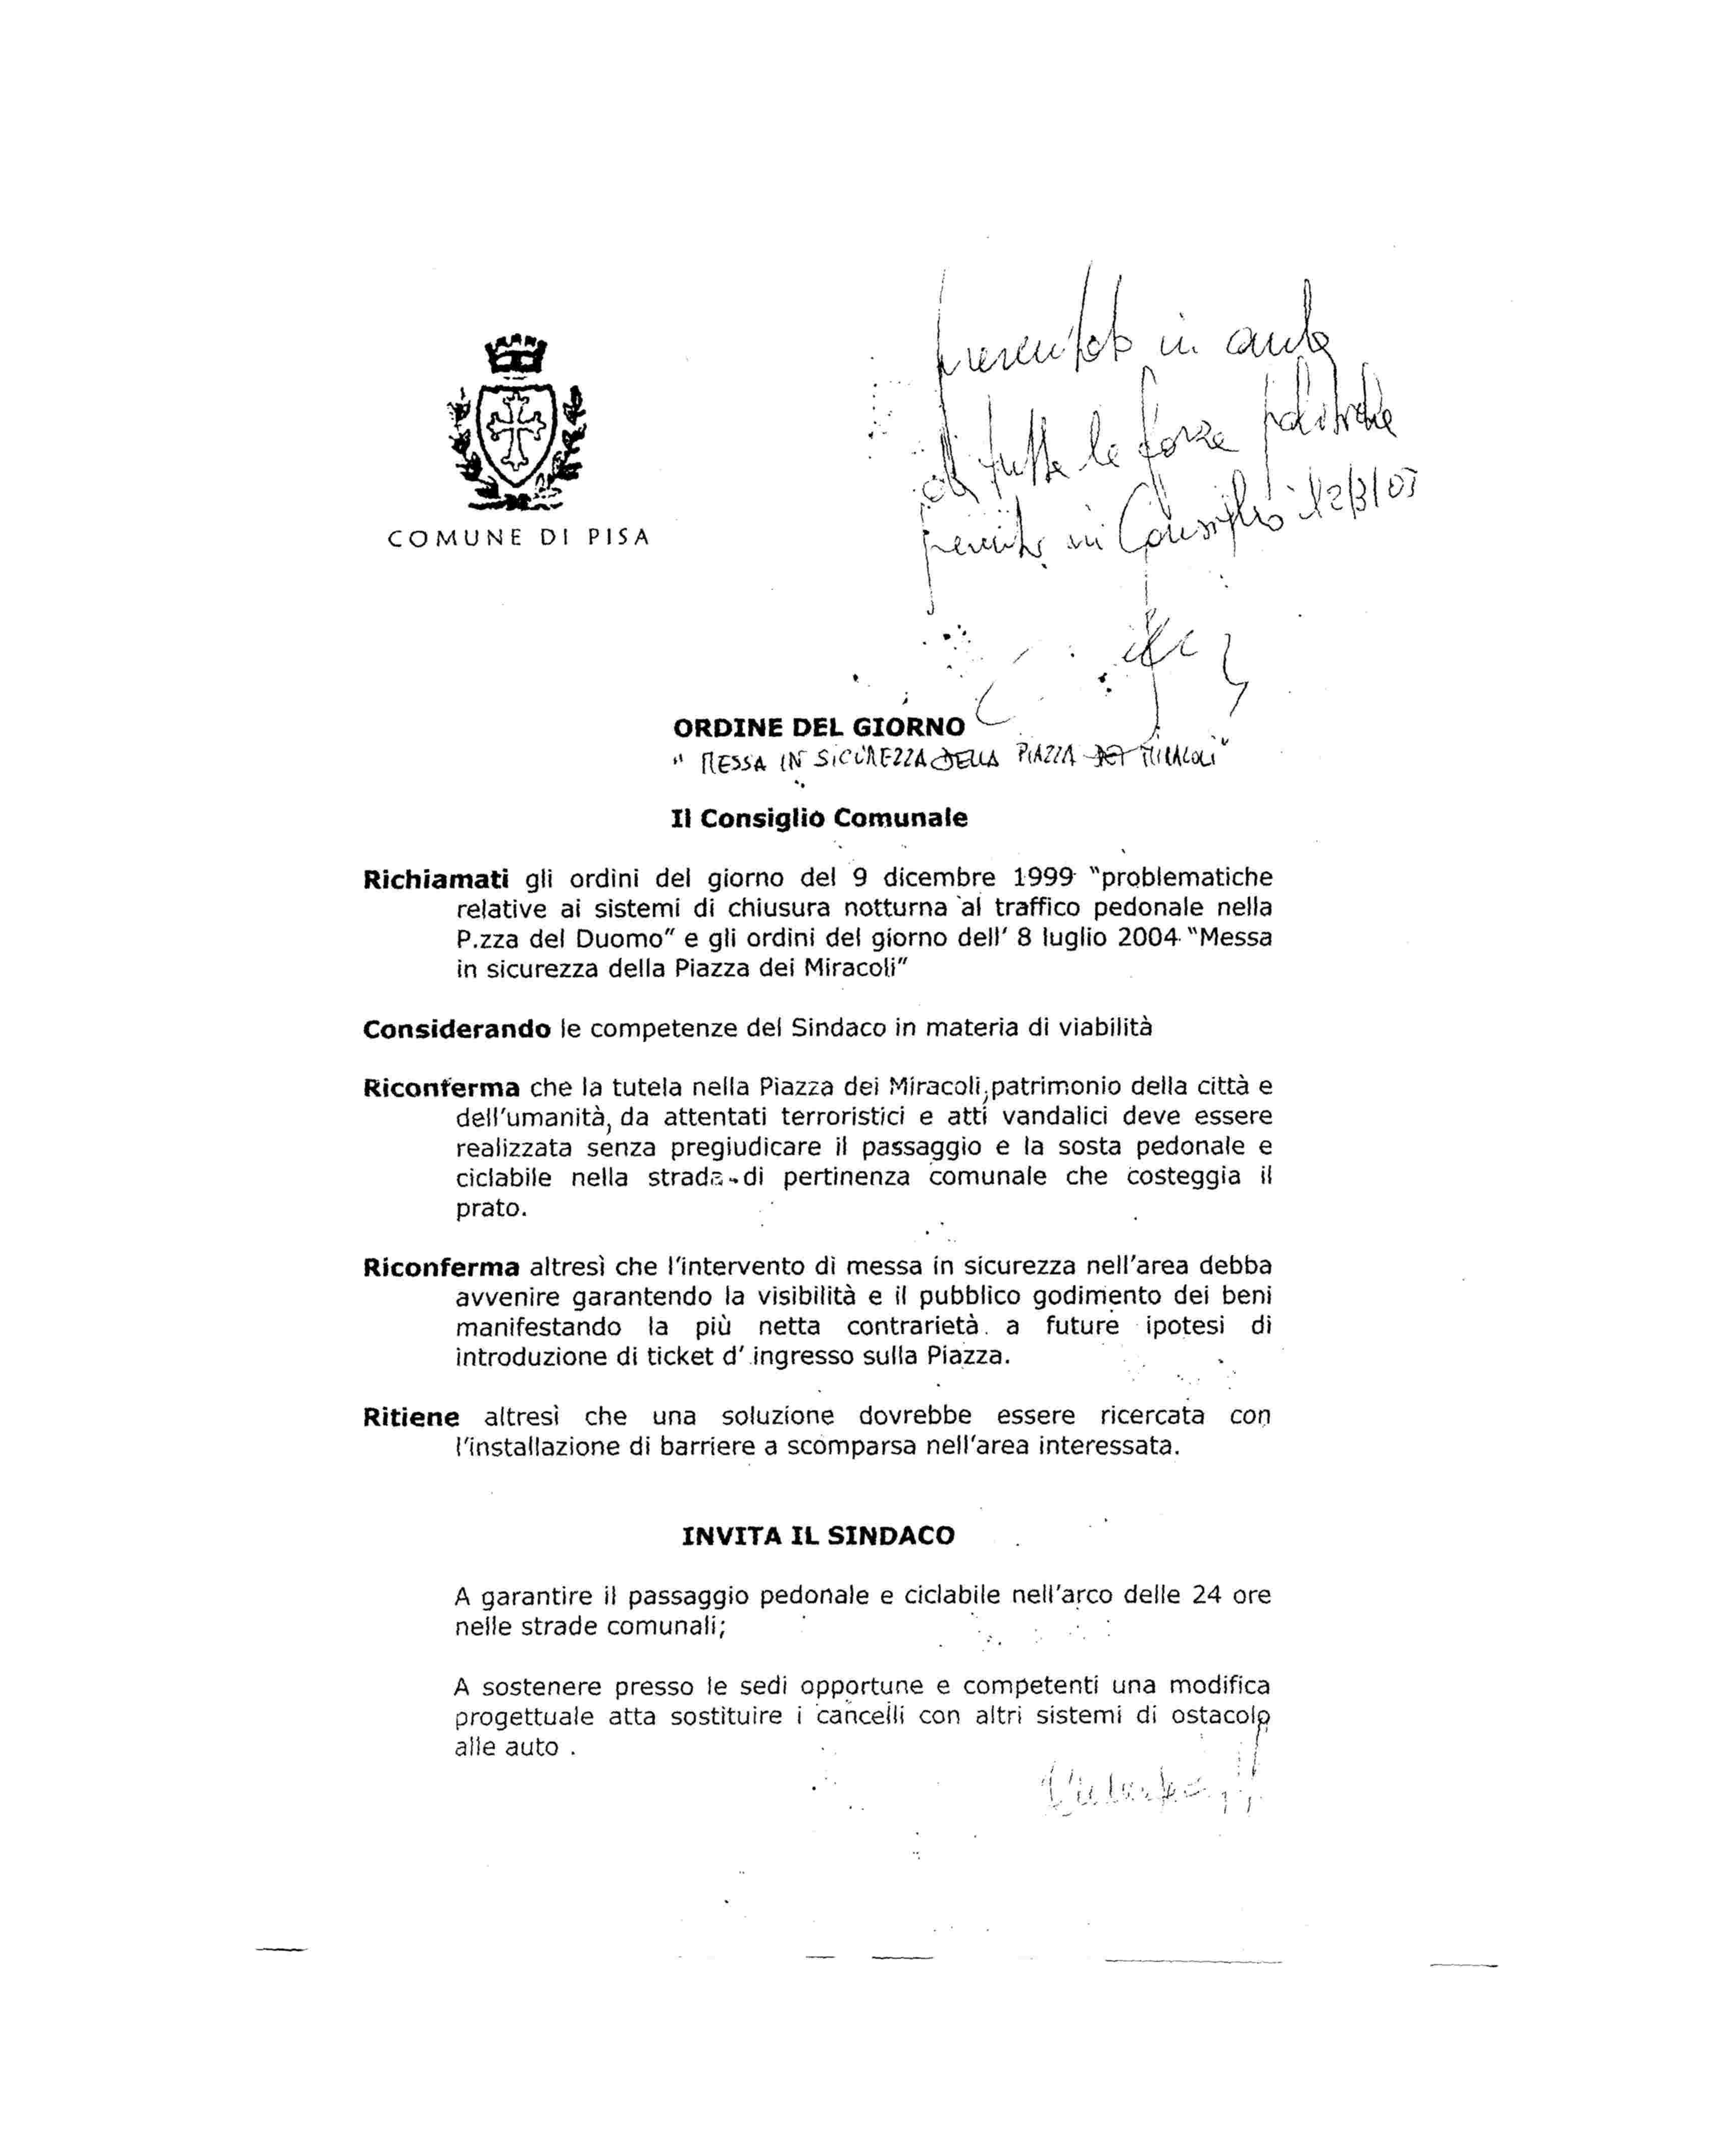 Ordine del giorno approvato dal  Consiglio Comunale di Pisa, 3 marzo 2005